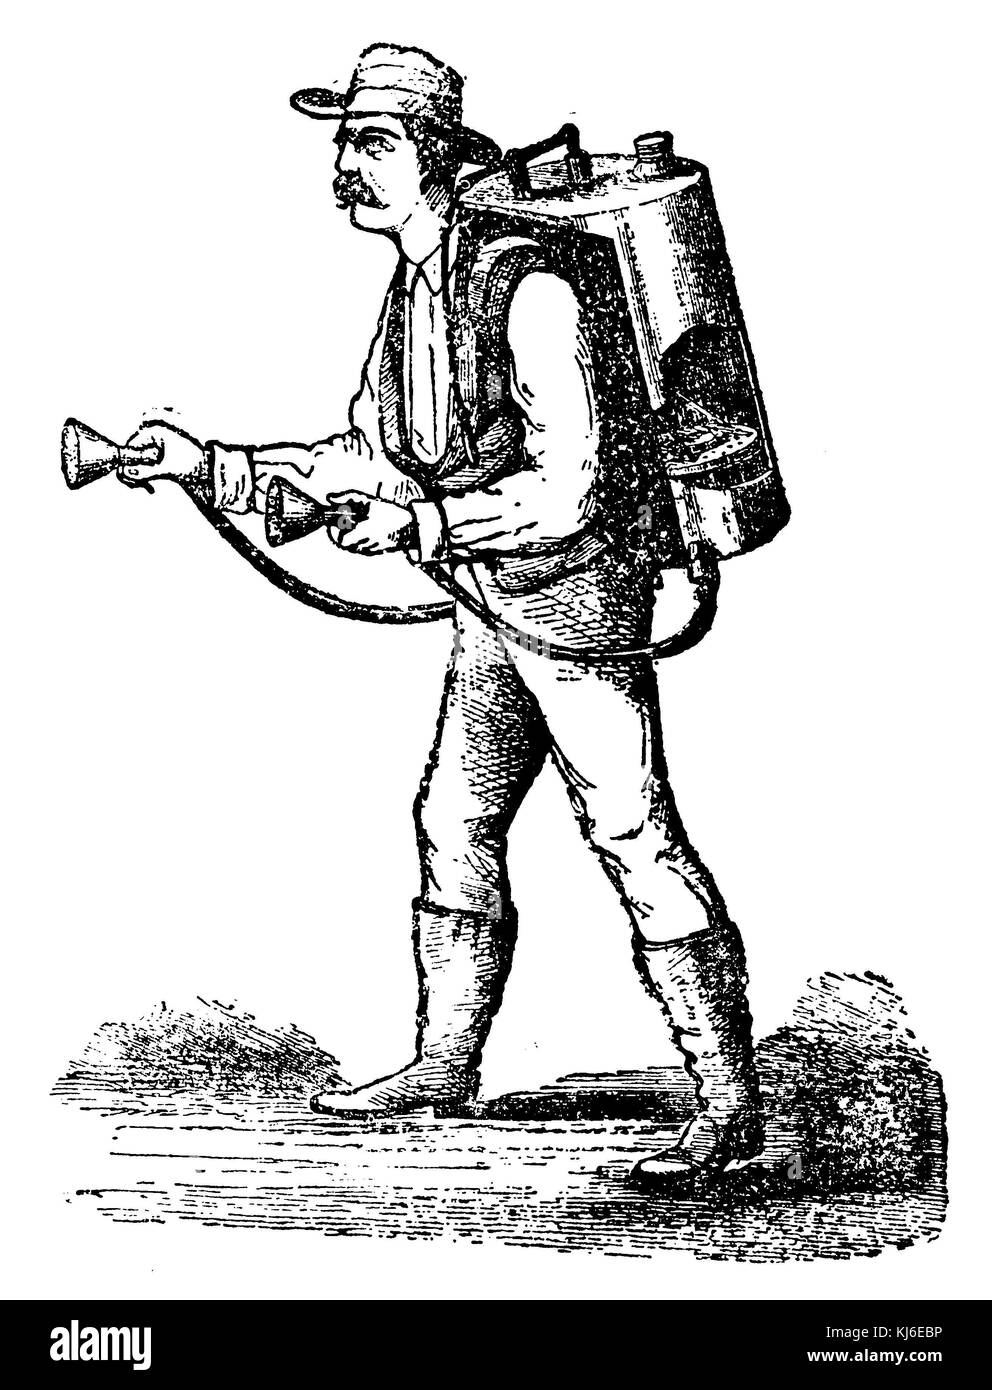 Gardener with watering apparatus (Gärtner mit Gießapparat) Stock Photo